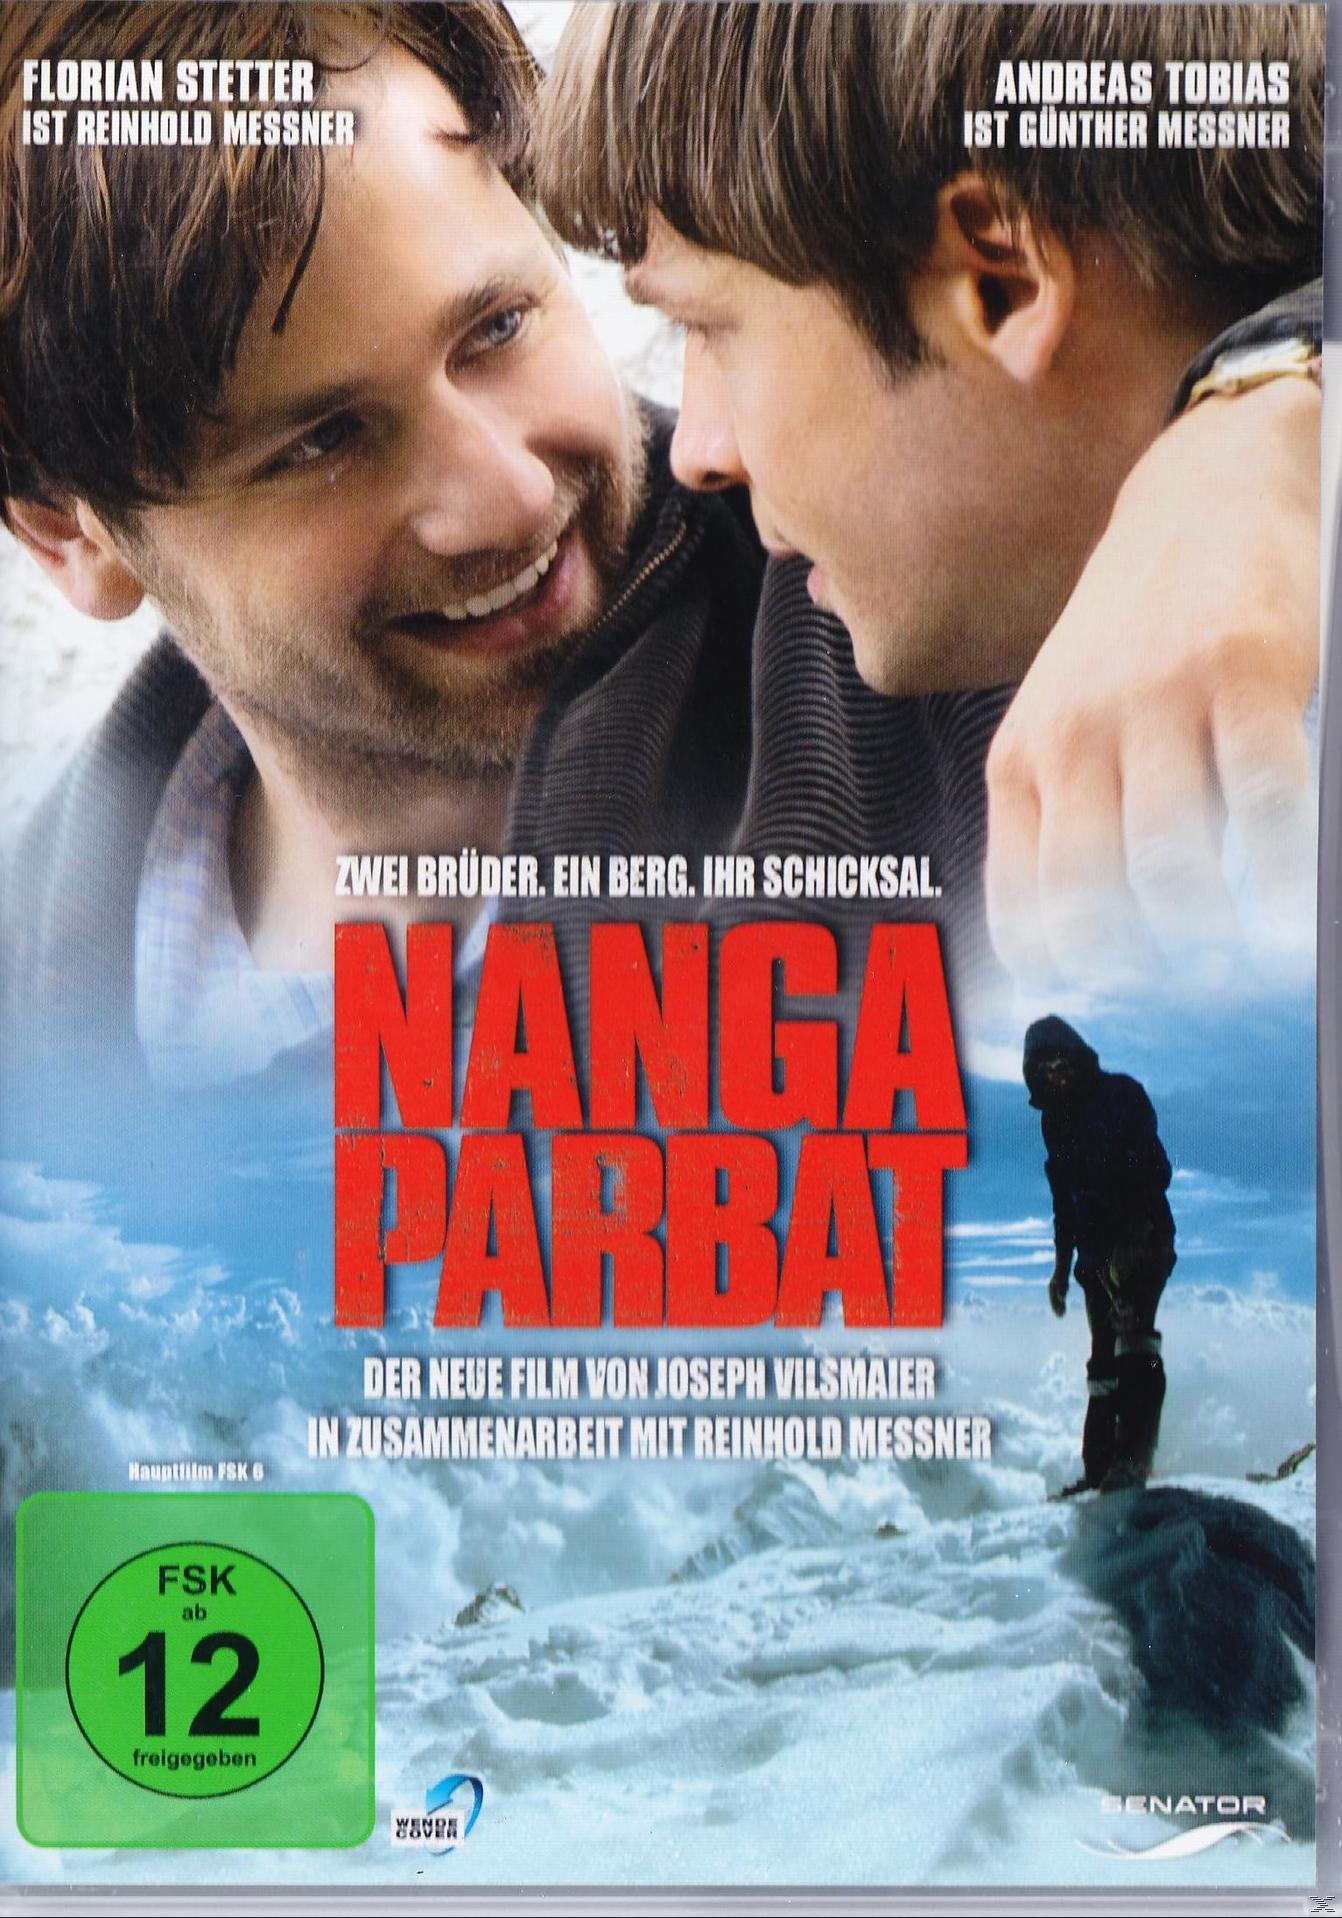 Nanga DVD Parbat